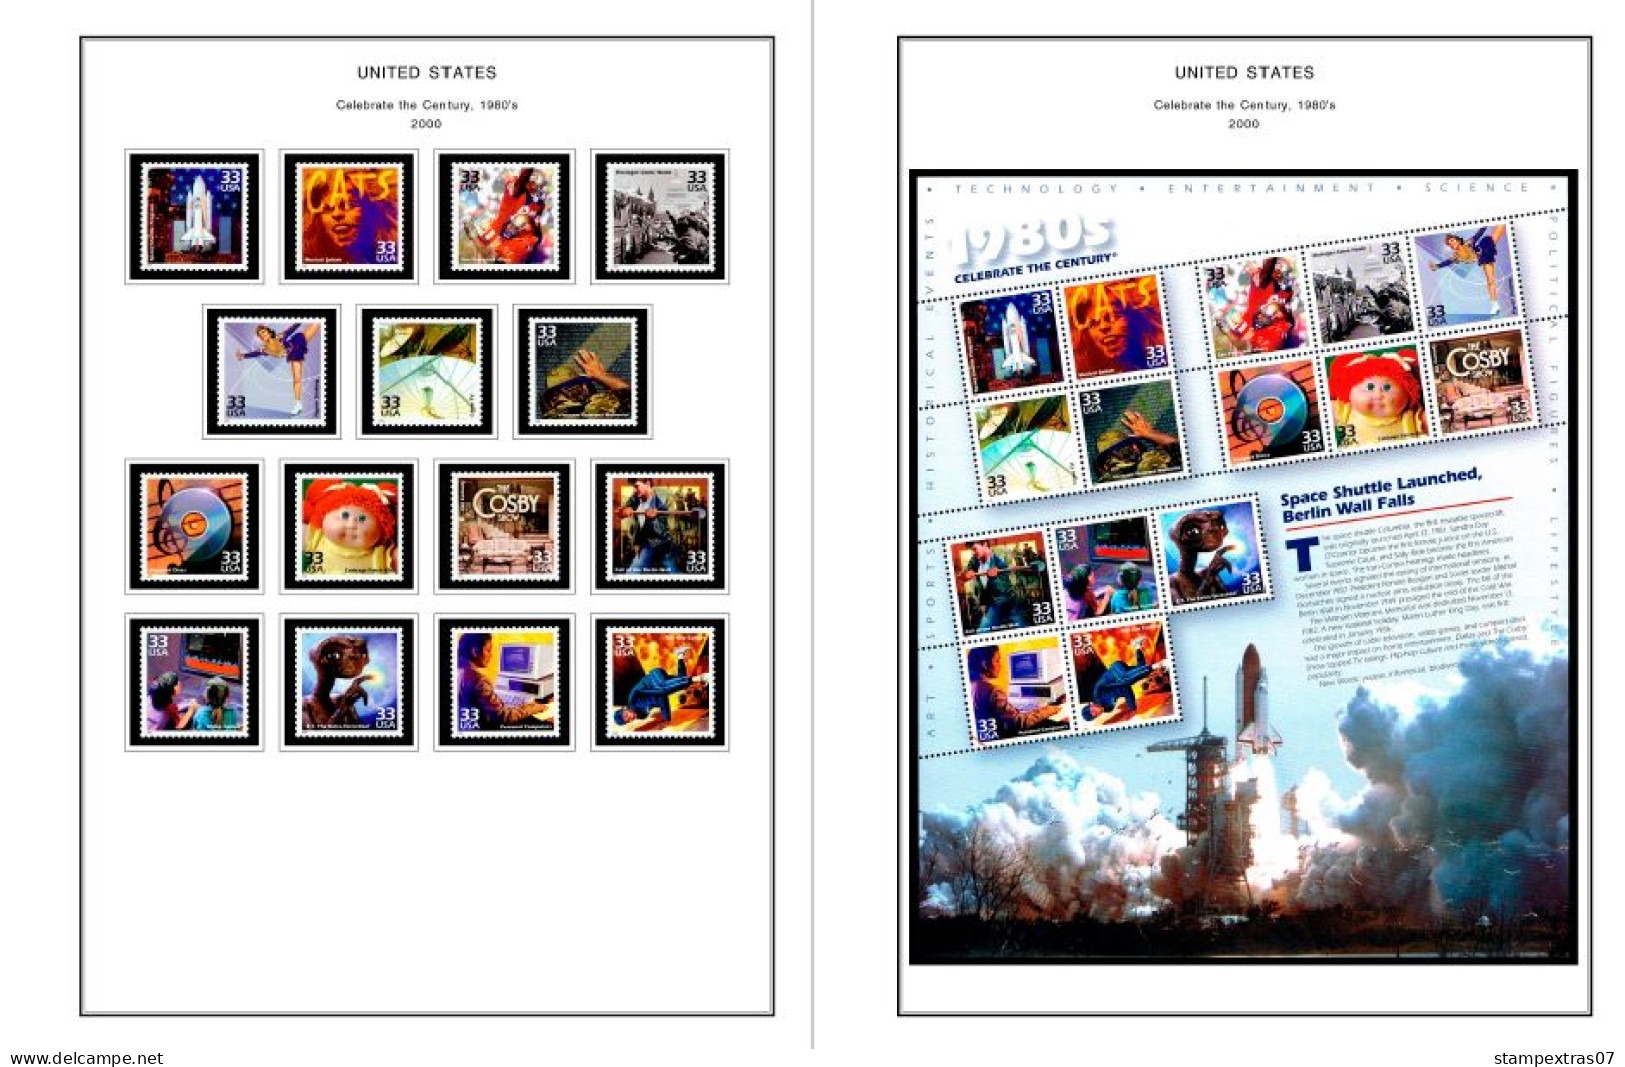 COLOR PRINTED USA 2000-2004 STAMP ALBUM PAGES (88 Illustrated Pages) >> FEUILLES ALBUM - Vordruckblätter